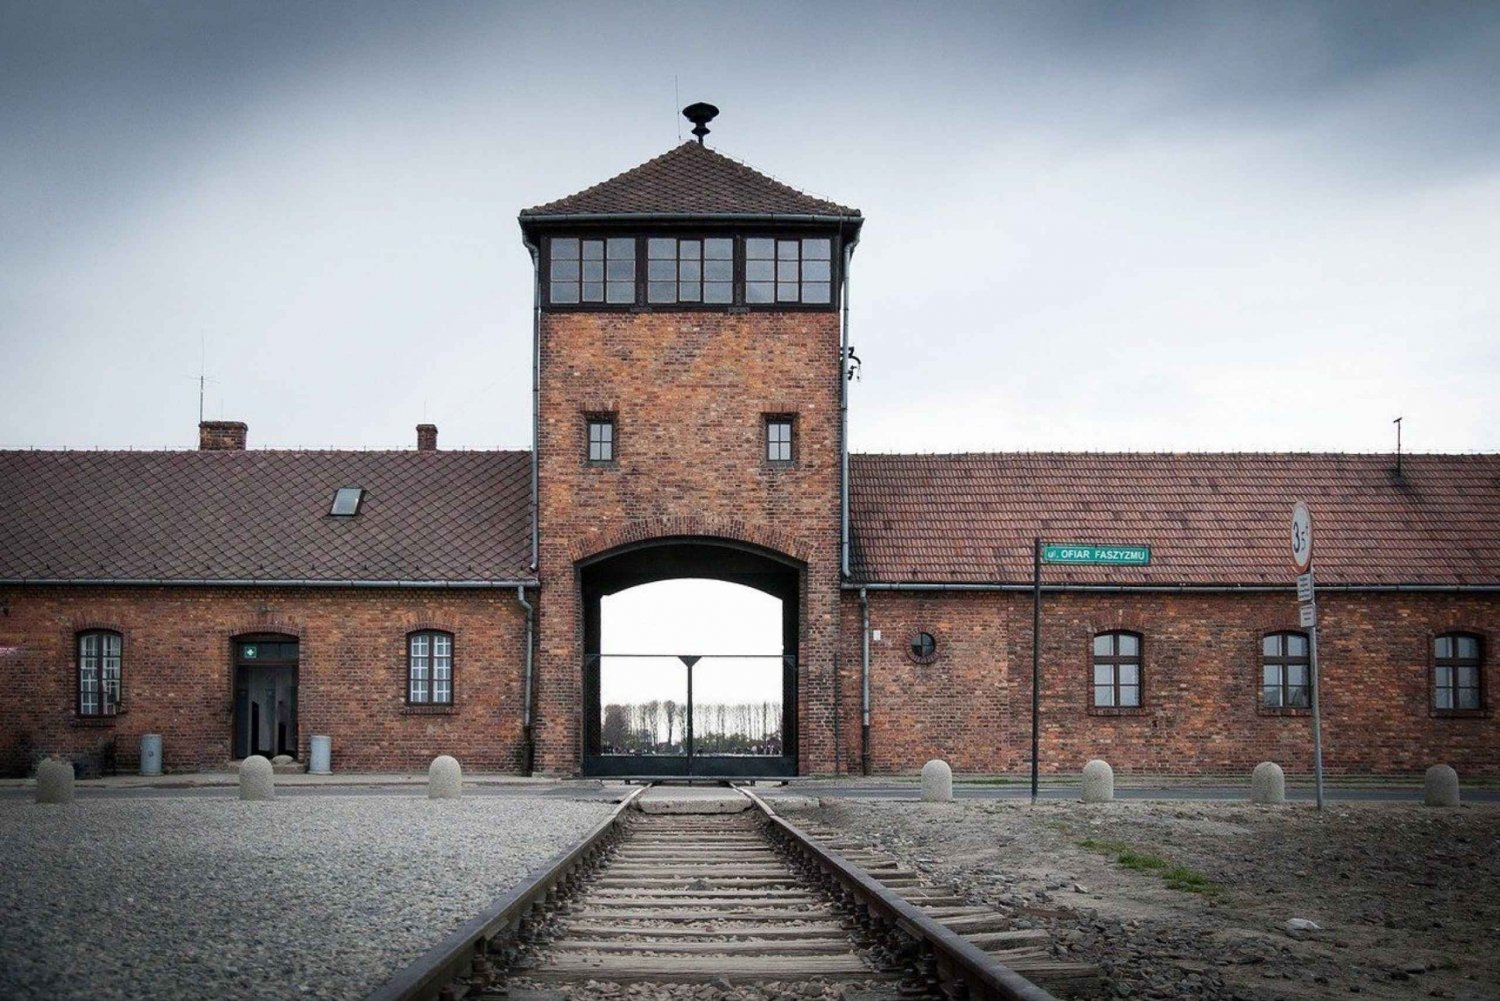 From Krakow: Auschwitz-Birkenau and Salt Mine Guided Tour